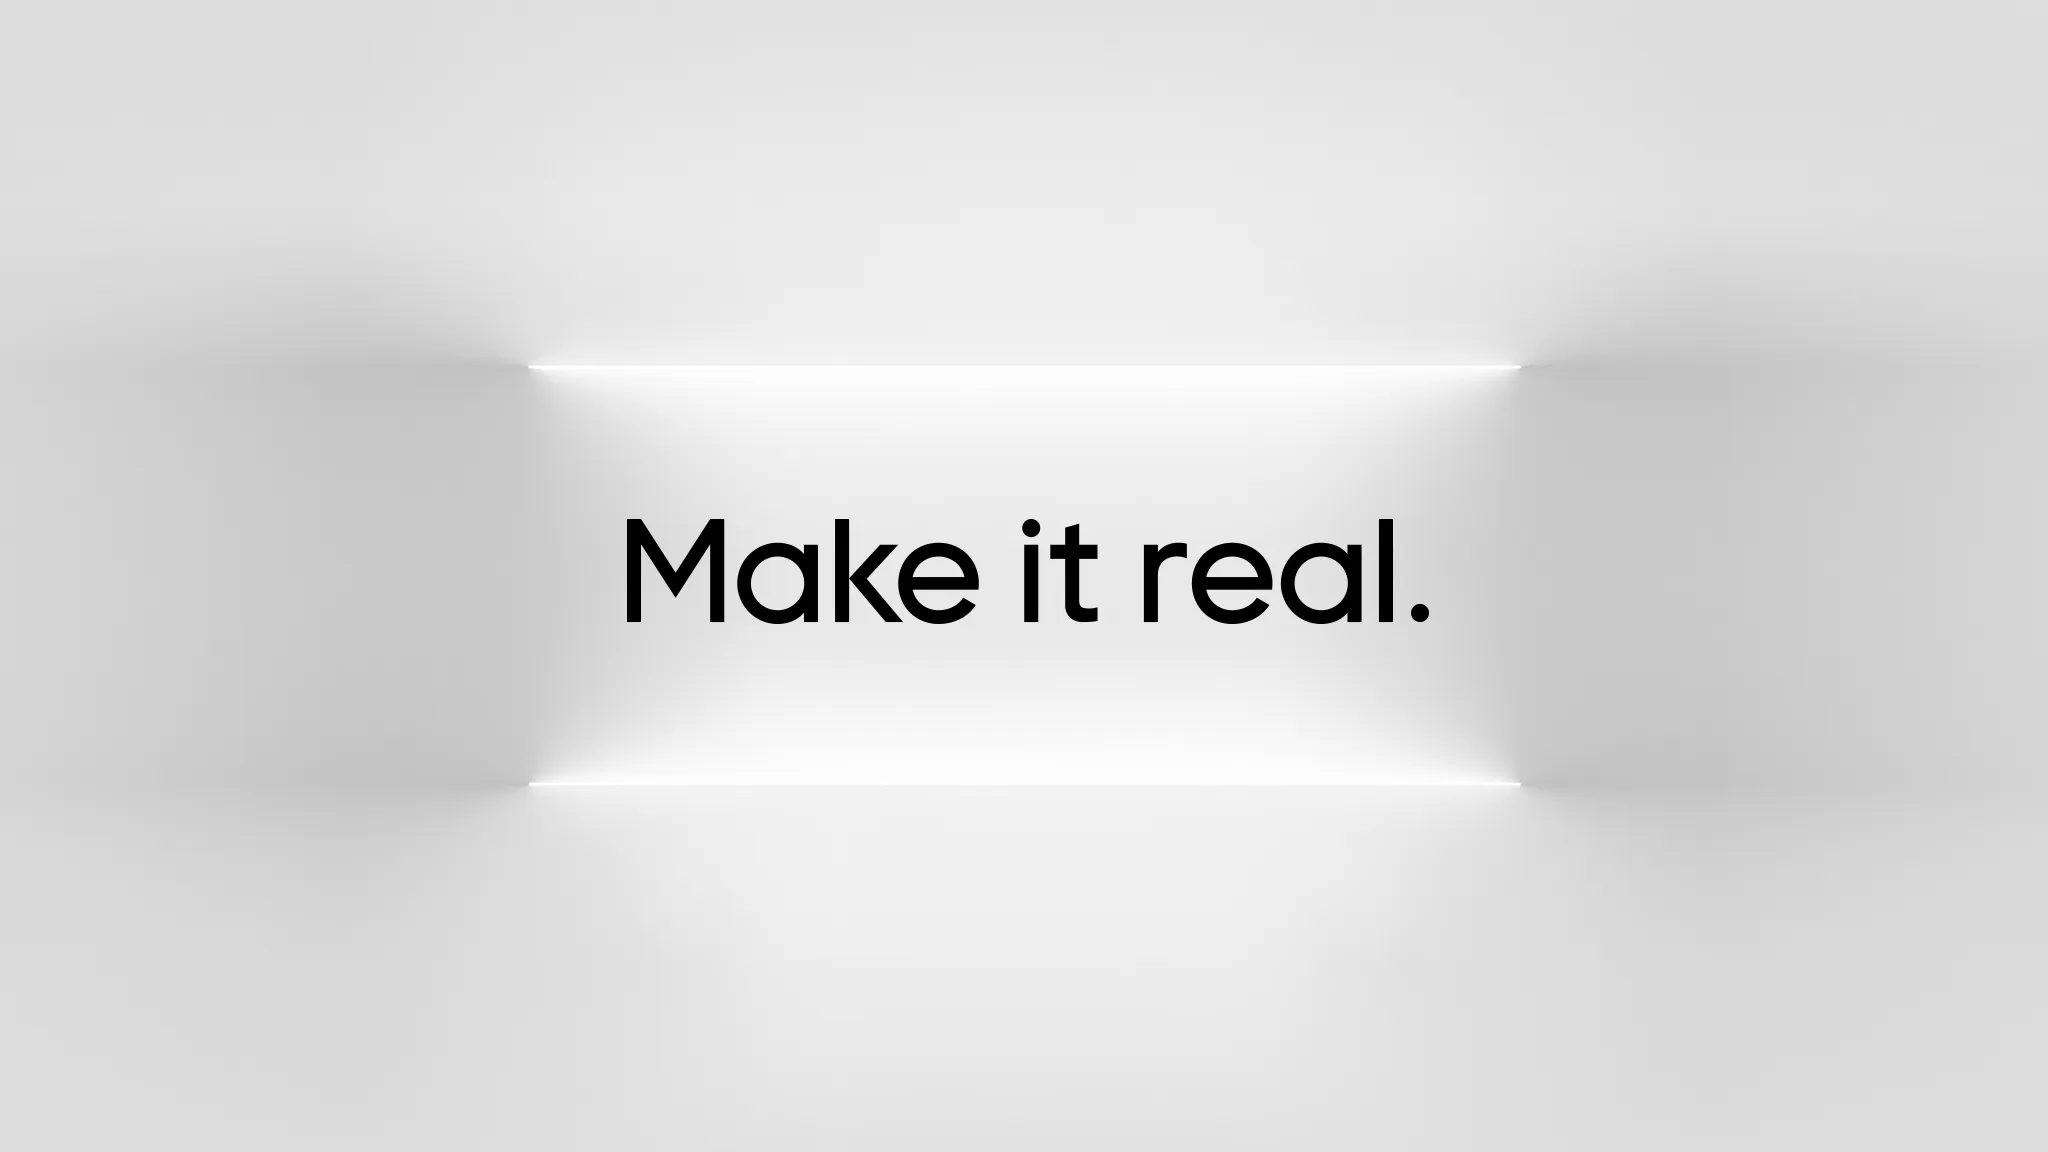 realme công bố logo và khẩu hiệu mới “Make it real. - Biến mọi ý tưởng thành hiện thực” cùng chiến lược phát triển xoay quanh người dùng trẻ